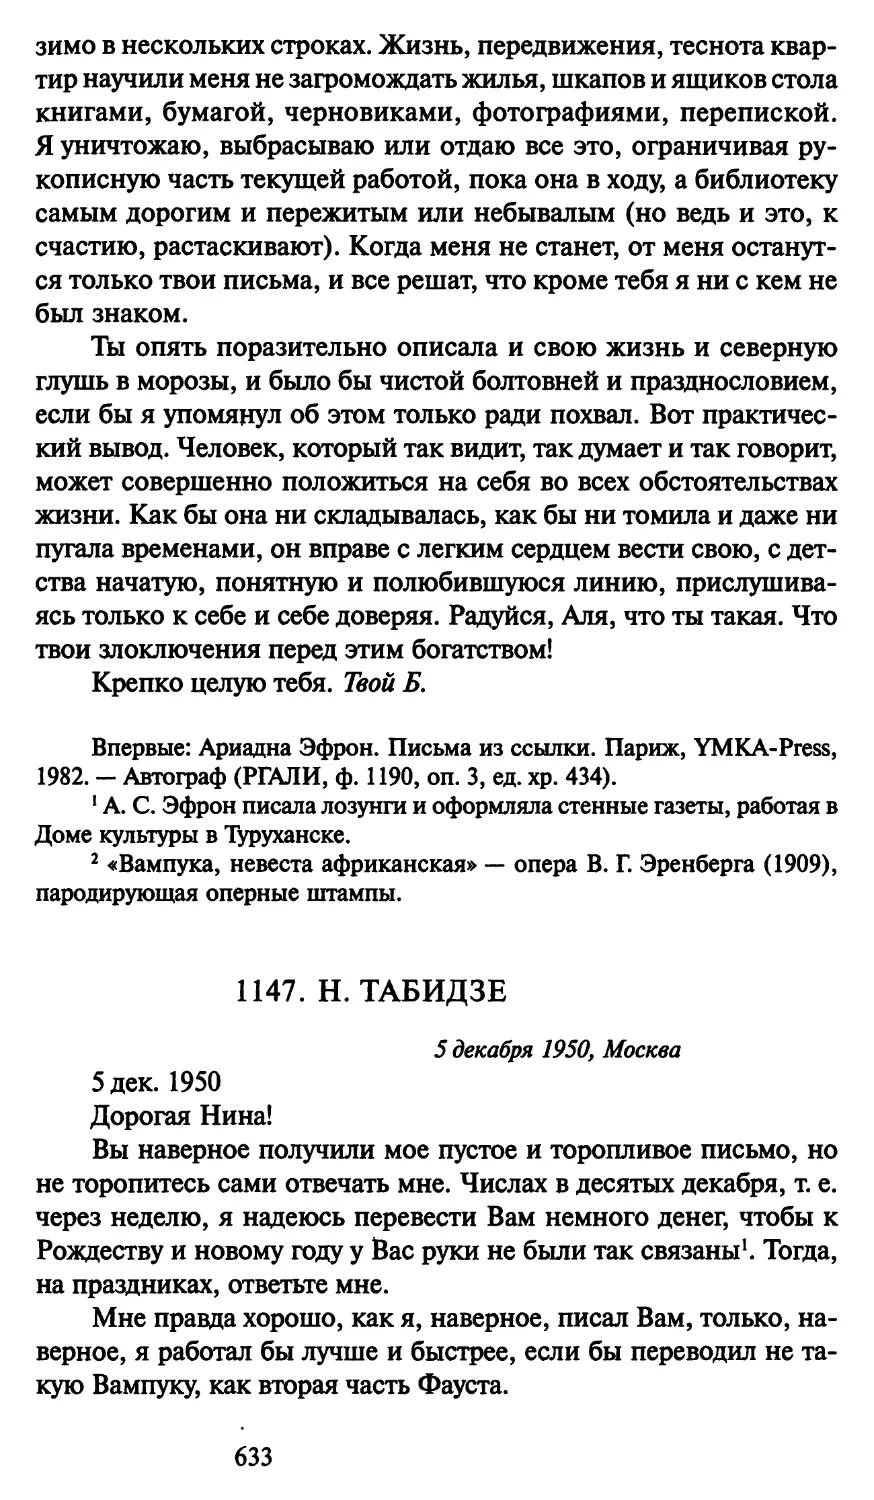 1147. Н. Табидзе 5 декабря 1950